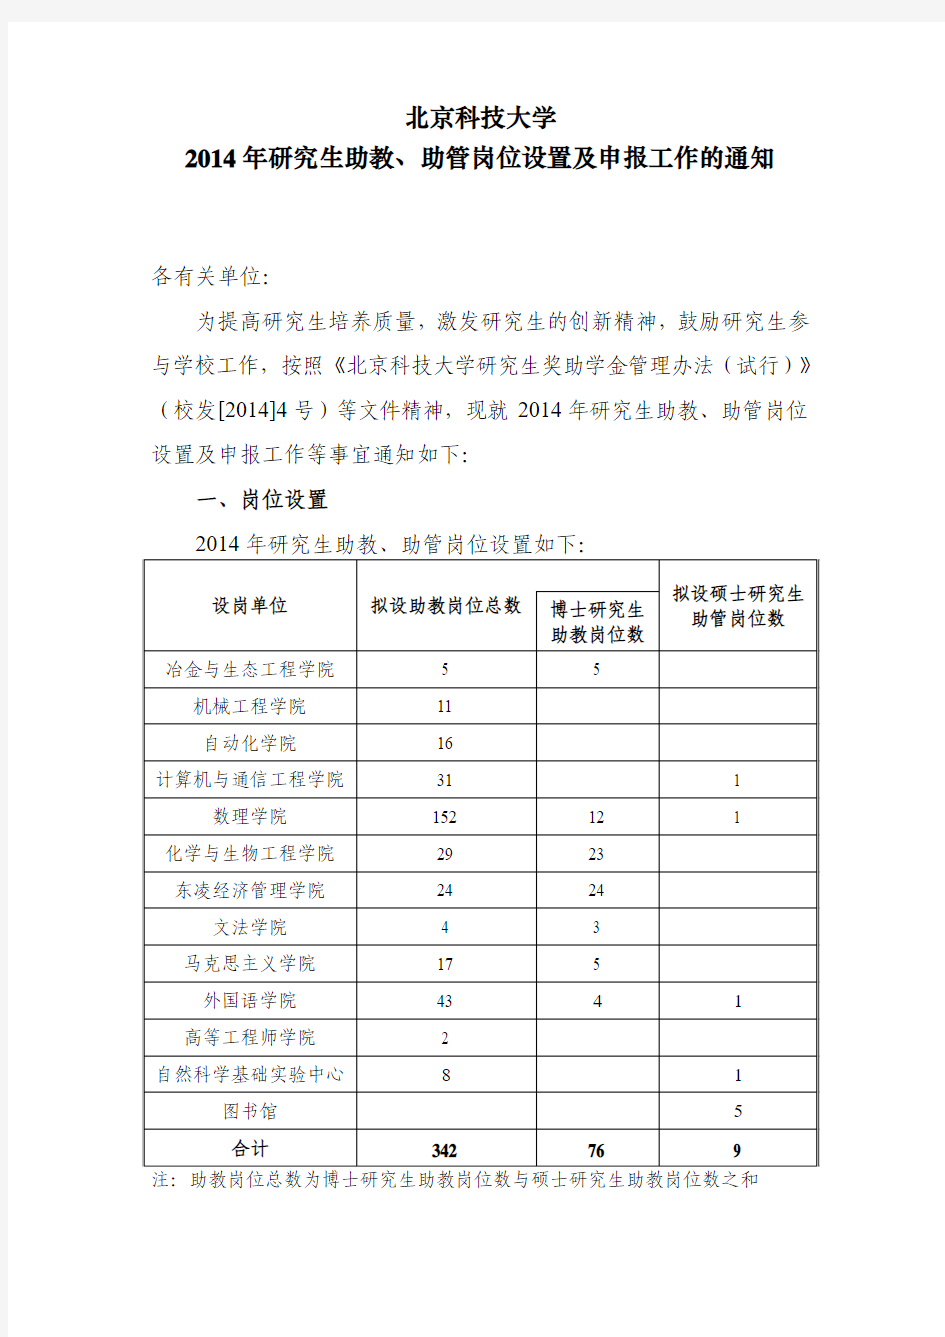 北京科技大学2014年研究生助教、助管岗位设置及申报工作的通知